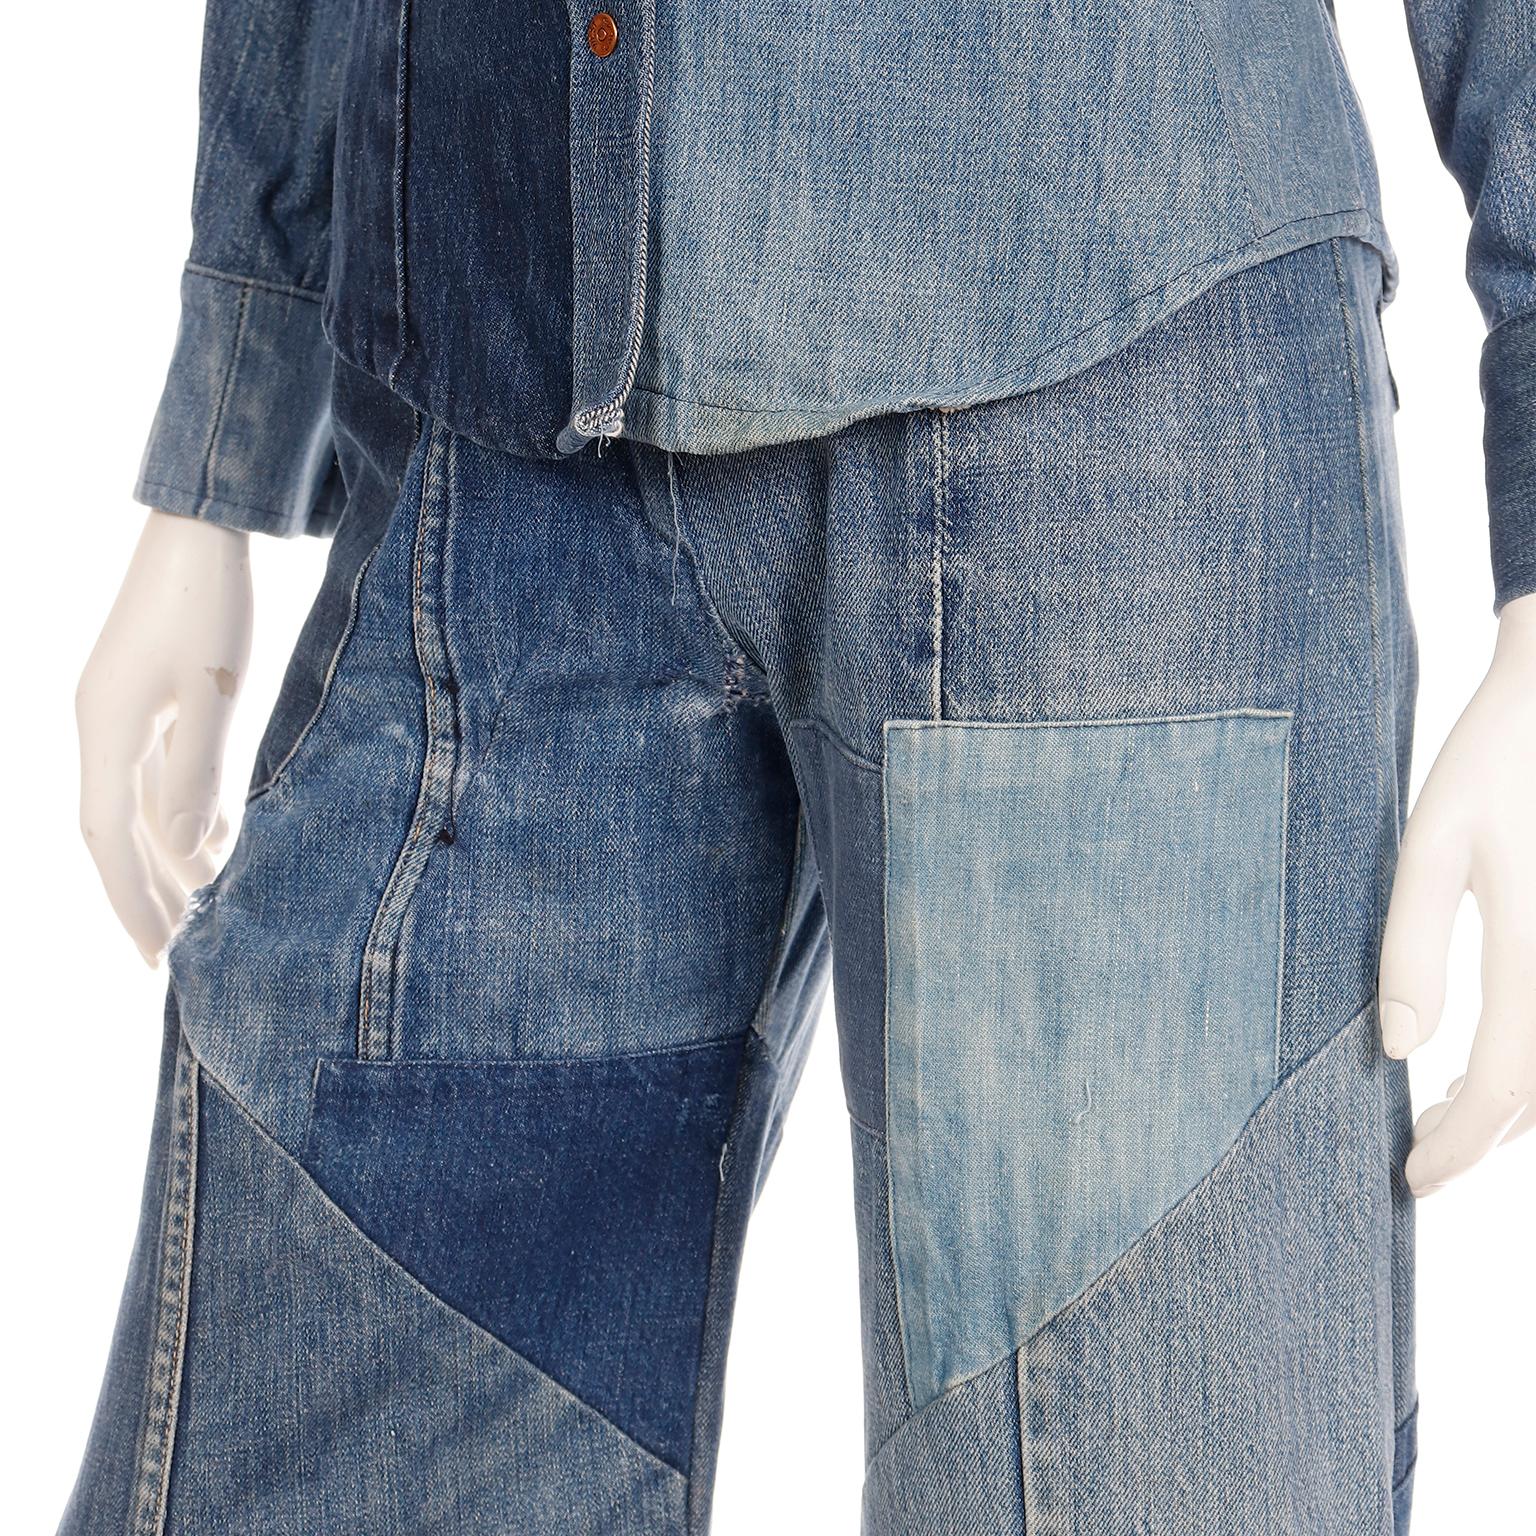 Simis Vintage 1970er Jahre Patchwork-Denim-Jeans und Hemd mit Knopfleiste 2 Teile Outfit 4